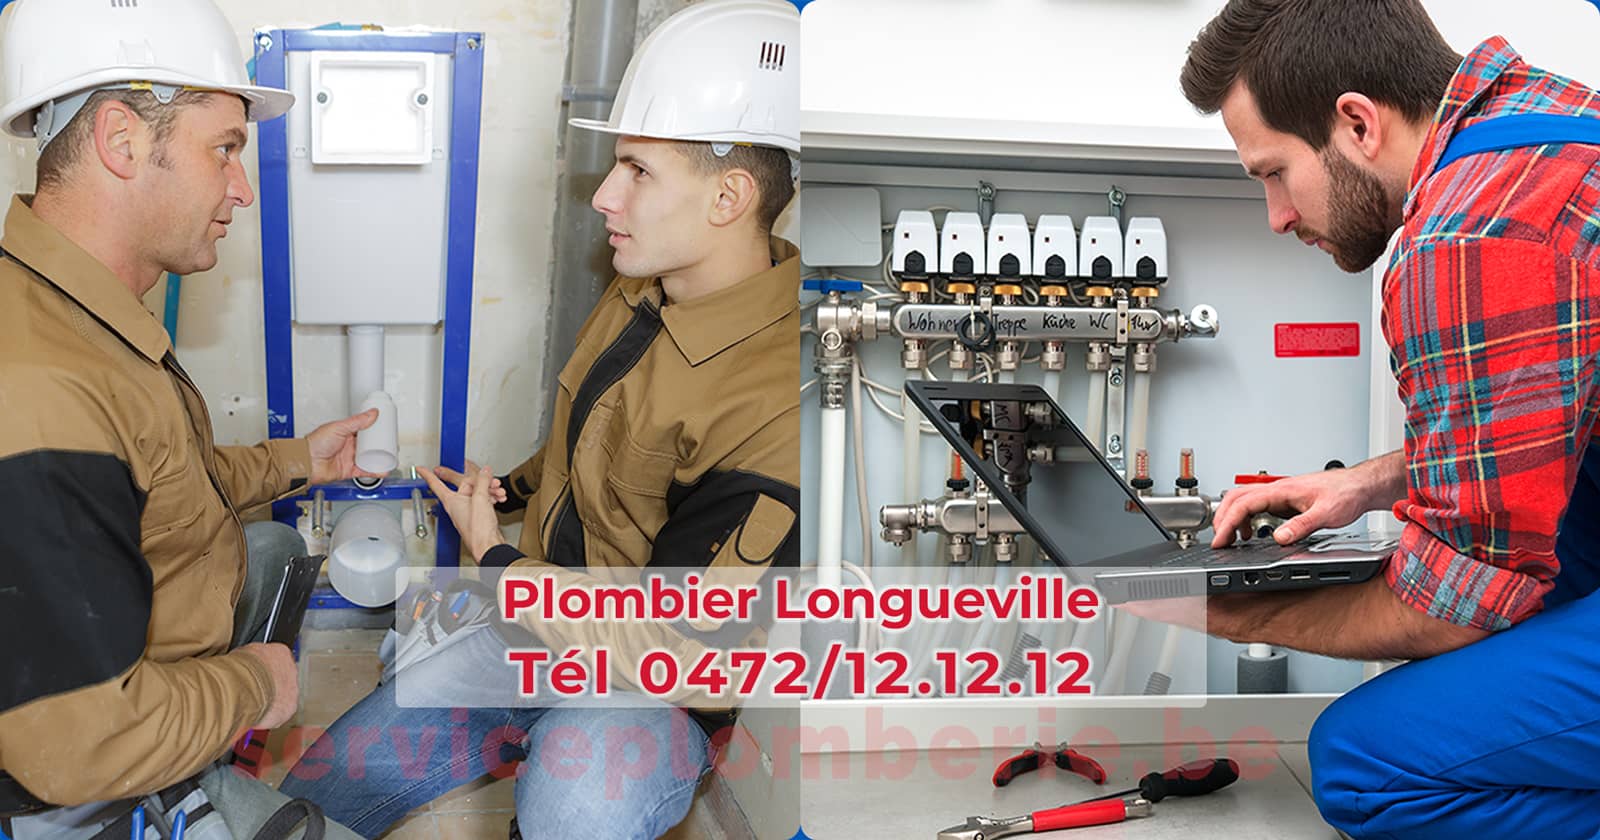 Plombier Longueville Agréé Professionnel Service Plomberie Tél 0472/12.12.12